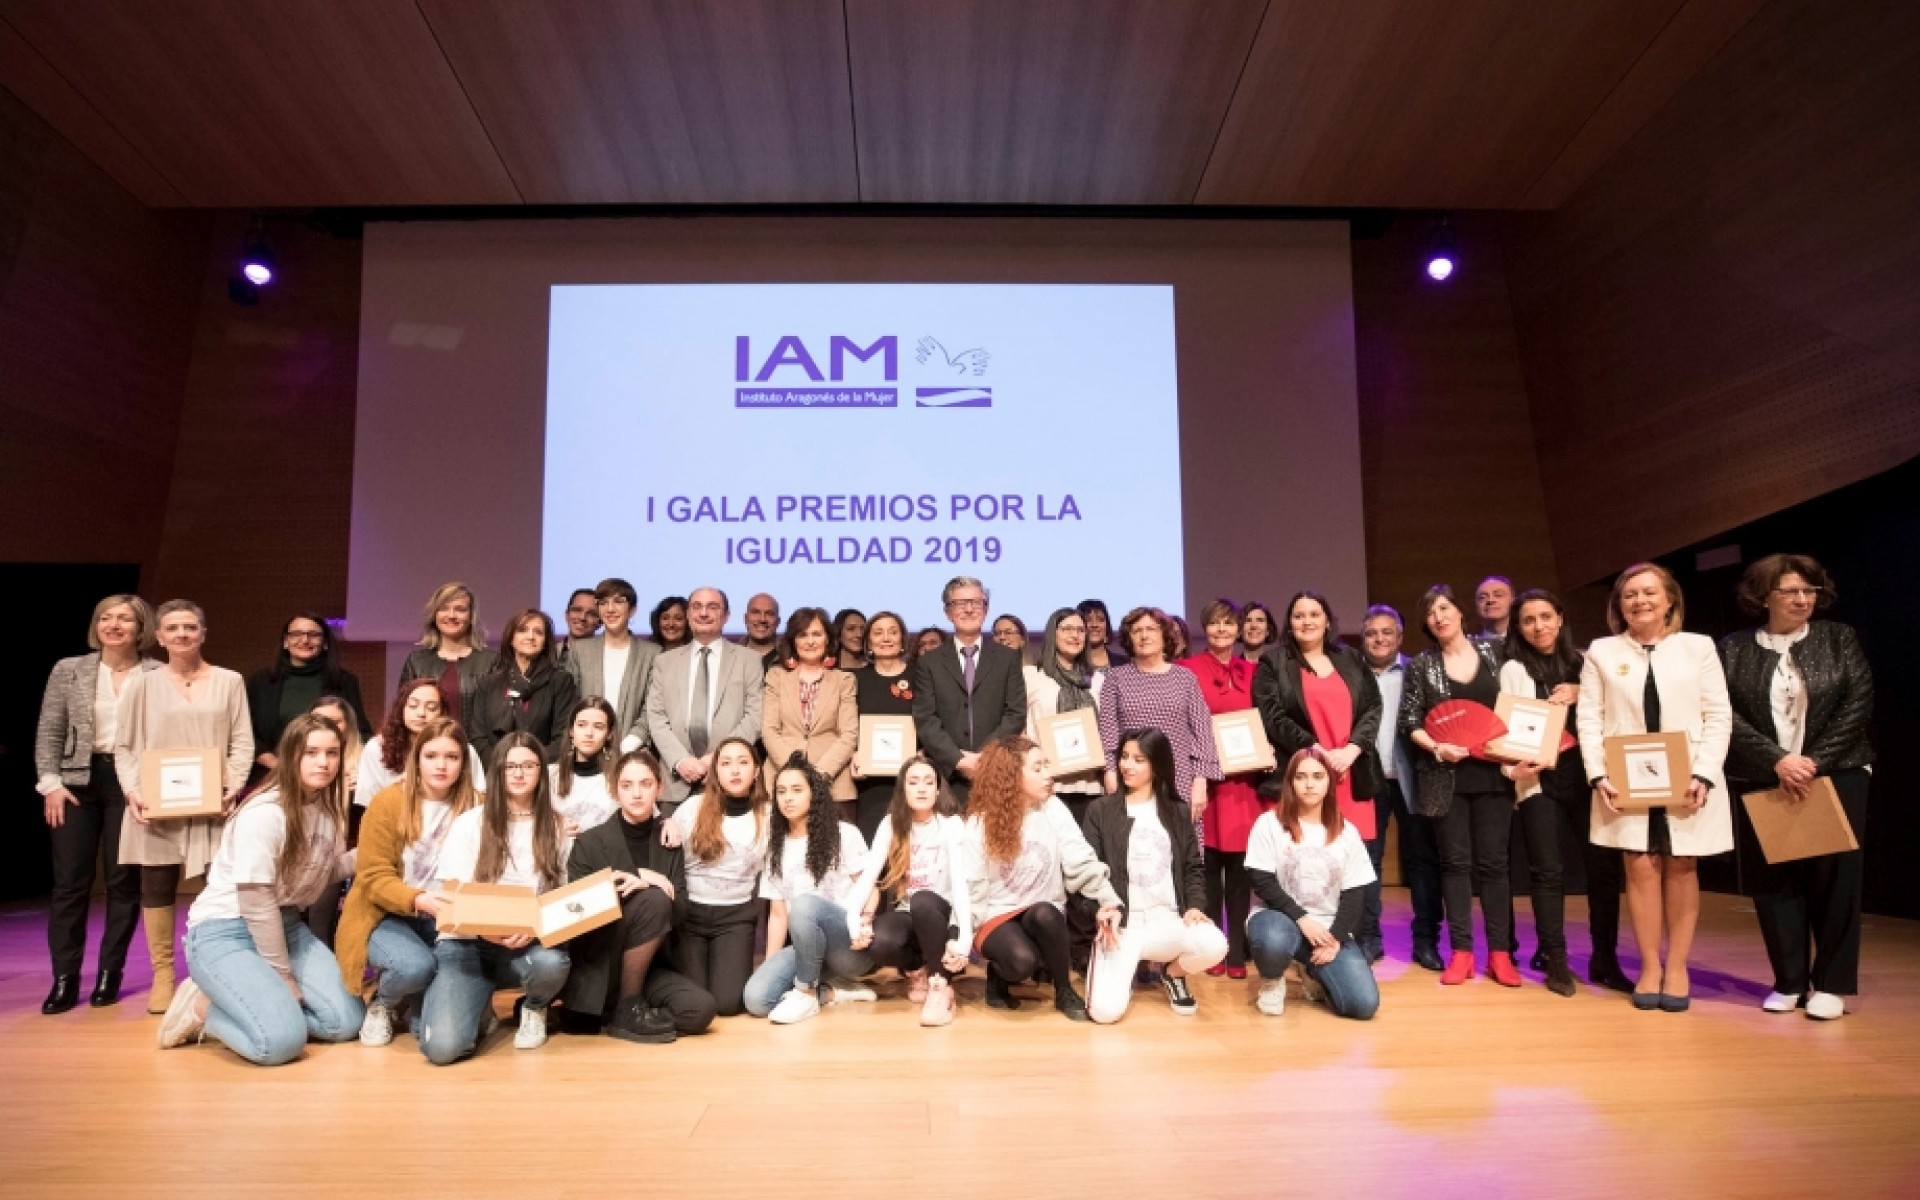 Los I Premios por la Igualdad en Aragón reconocen el trabajo de 11 entidades y personas que trabajan por la plena igualdad entre mujeres y hombres